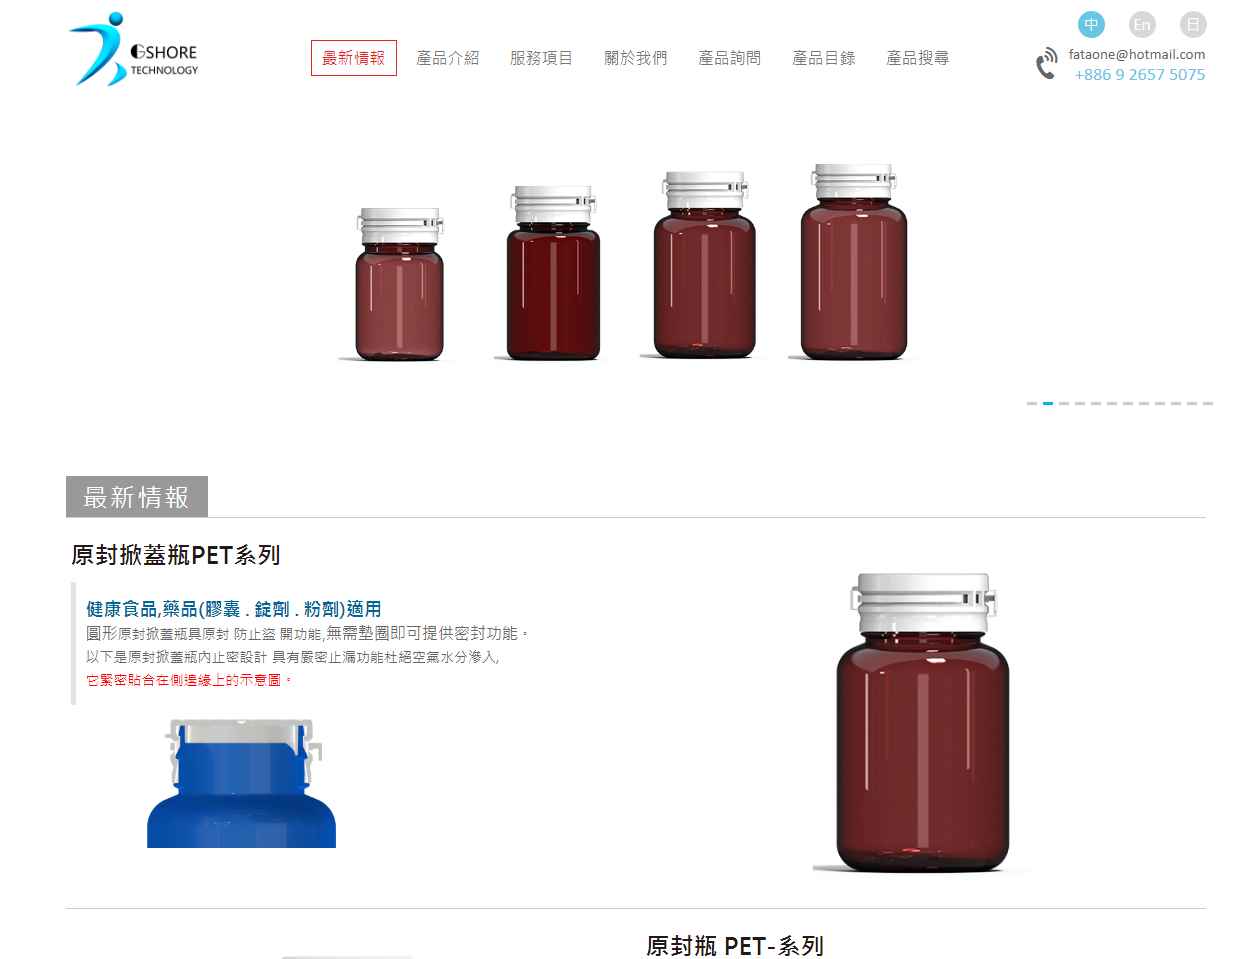 ッ ku su plastic containers Manufacture a